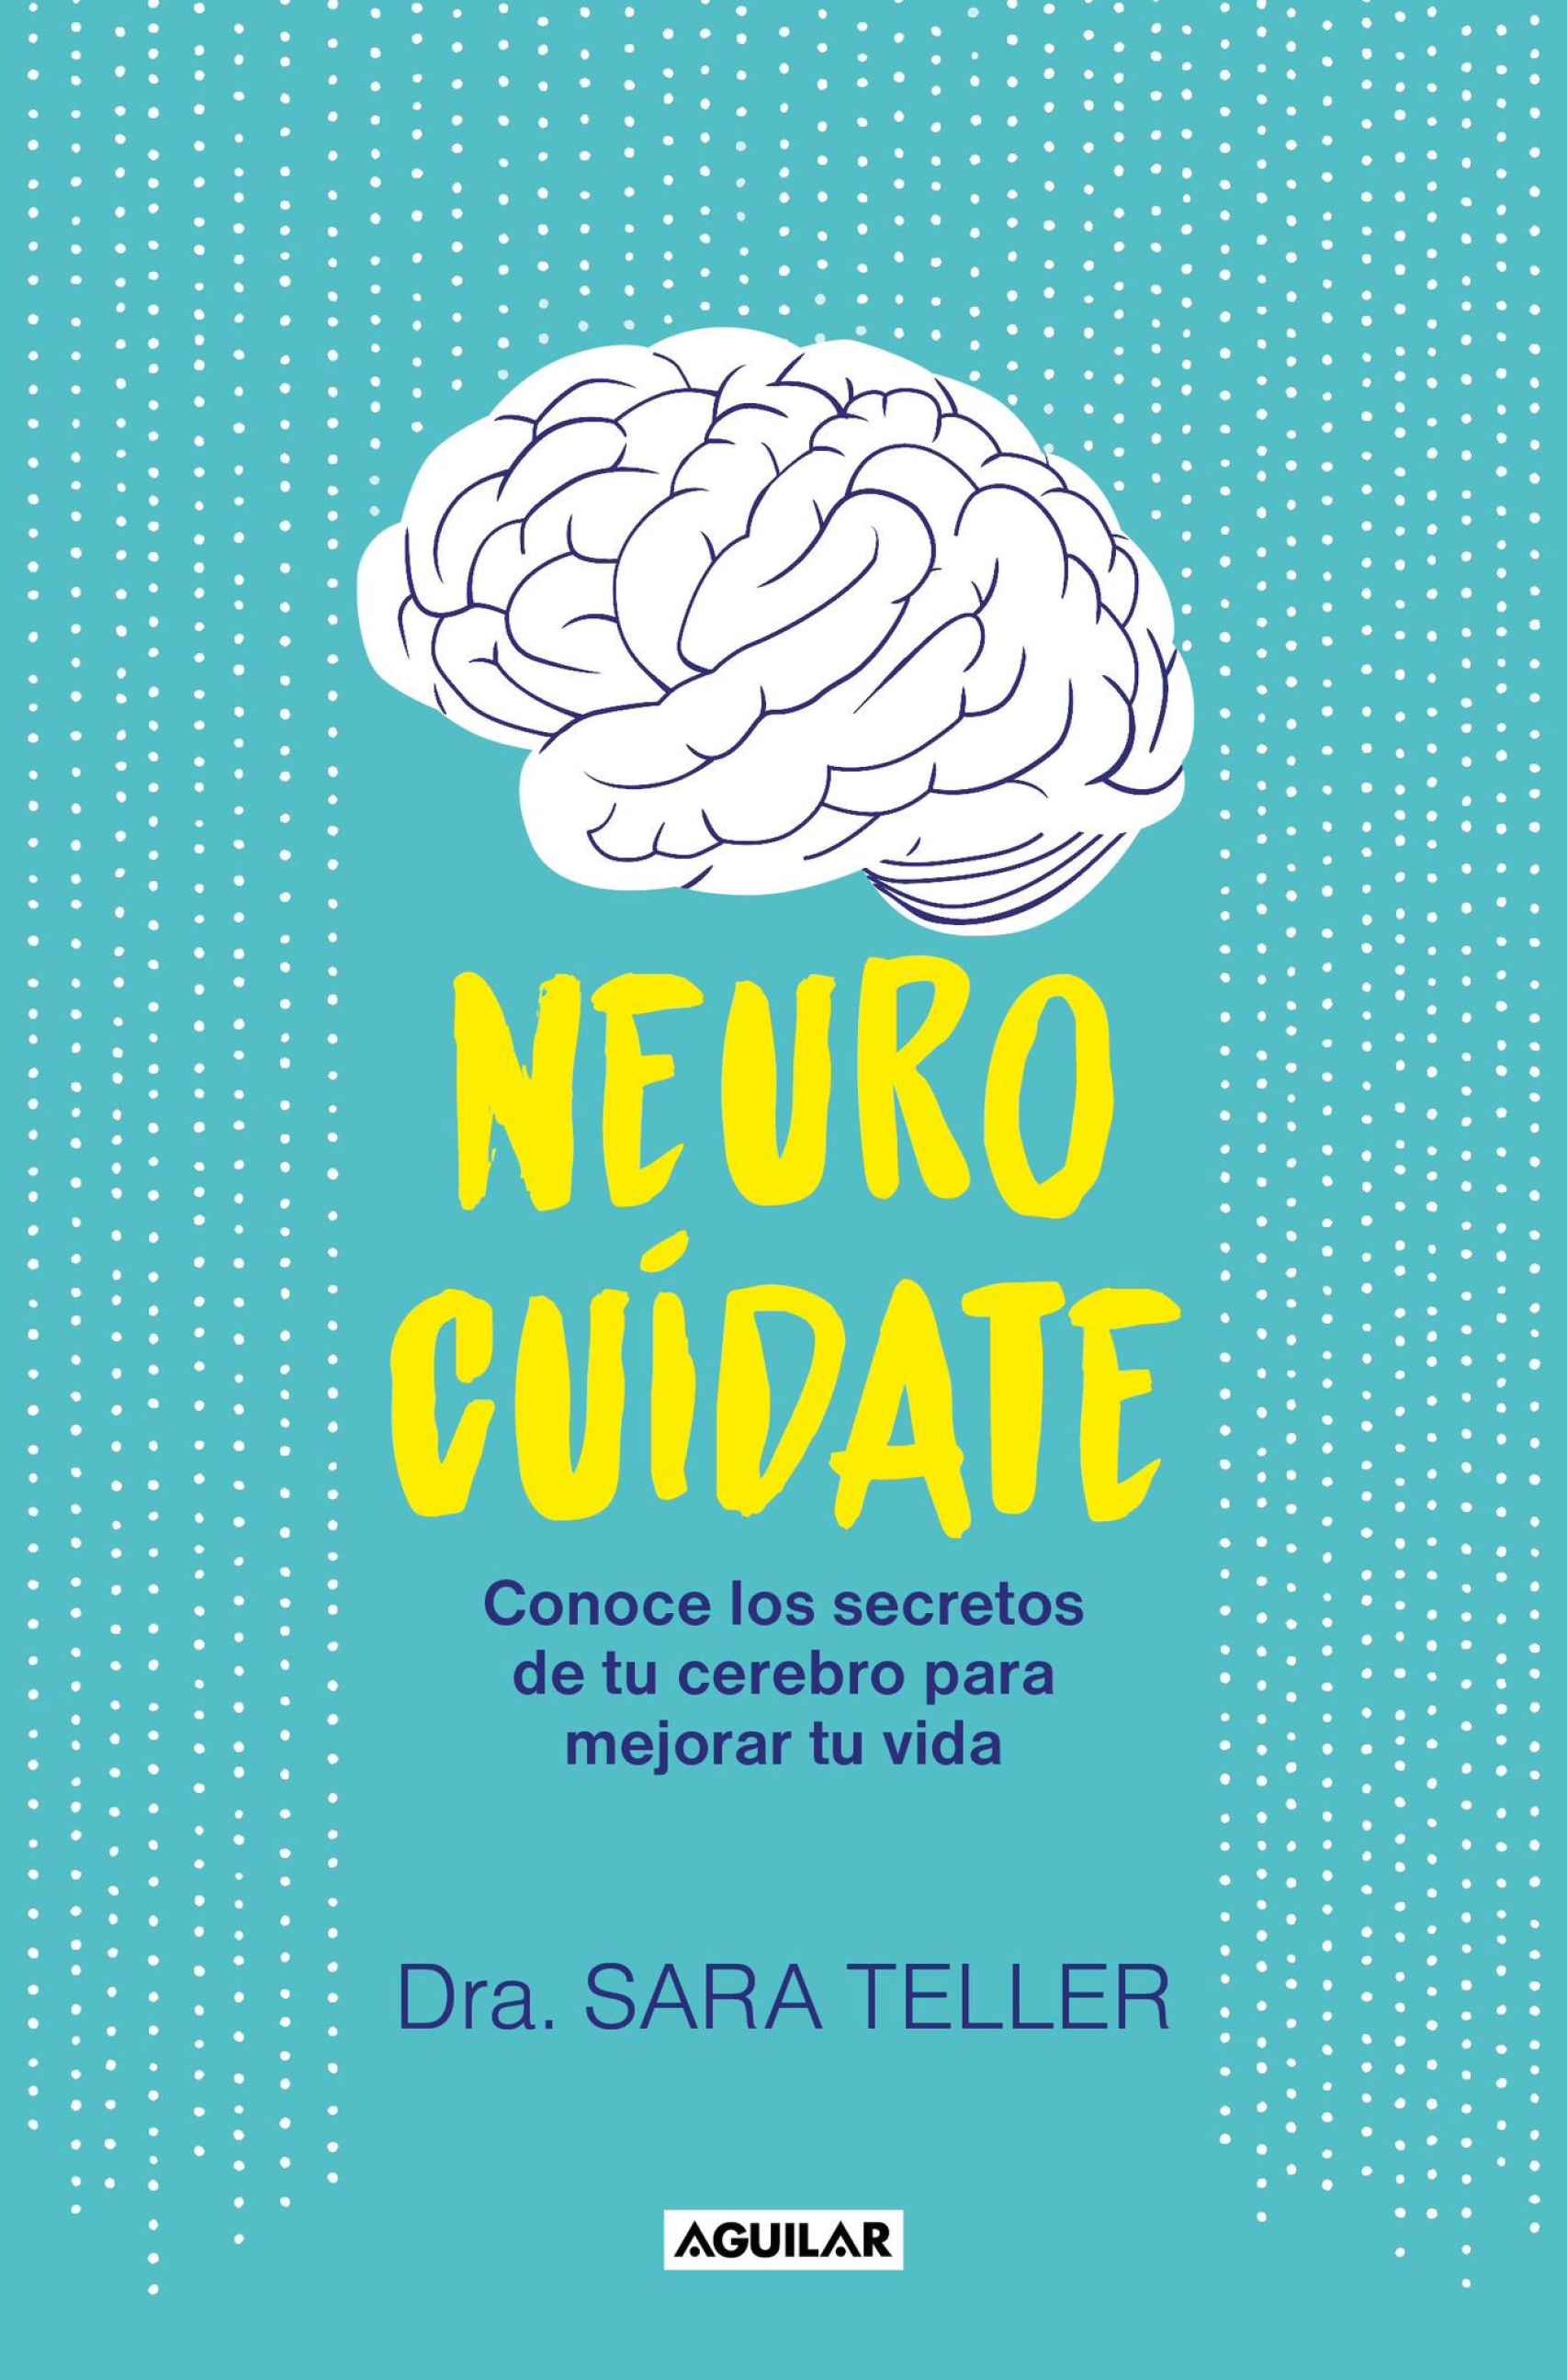 Portada del libro 'Neurocuídate: Conoce los secretos de tu cerebro para mejorar tu vida' (Aguilar, 2023)  de Sara Teller.